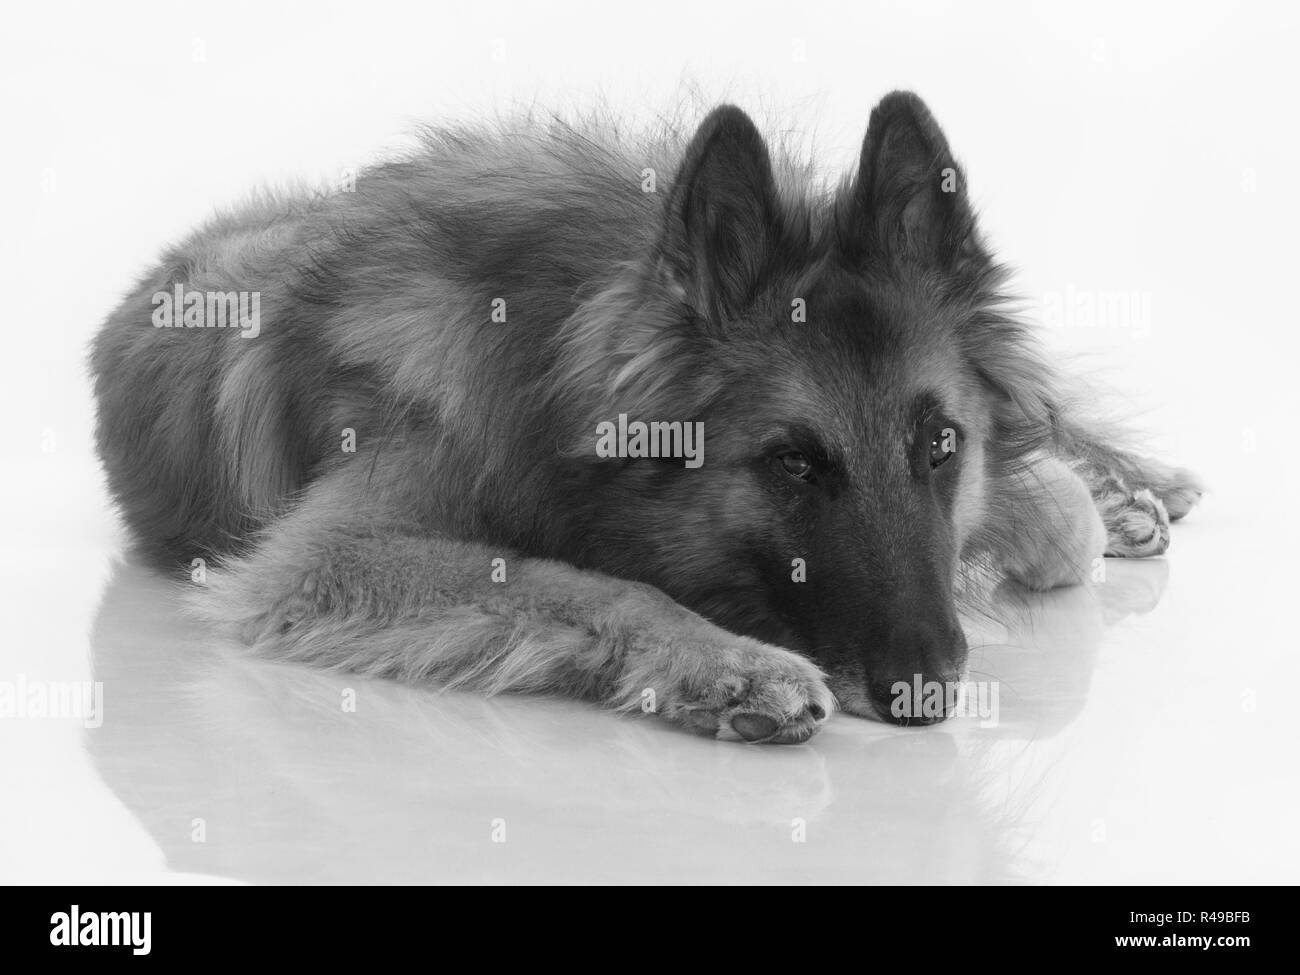 Hund, isoliert belgische Schäferhund Tervuren, schwarz und weiß, glänzend weißen Stock Stockfoto